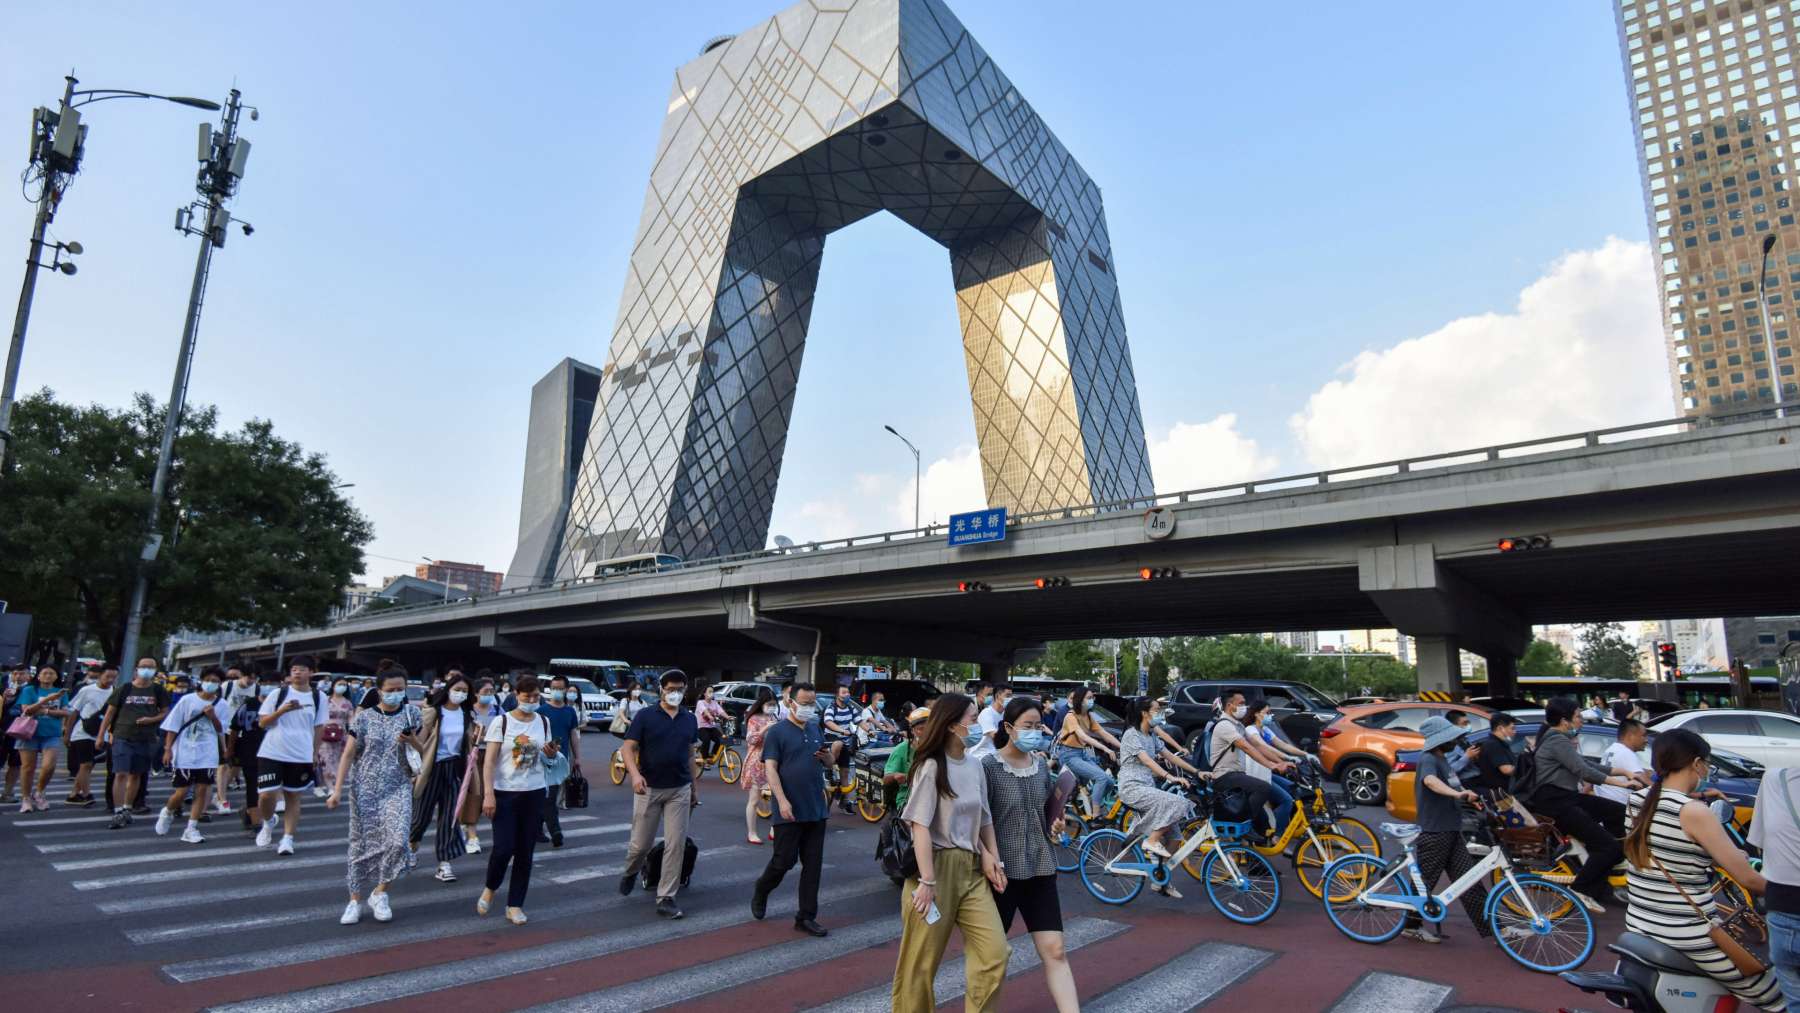 Imagen de Guomao, distrito de negocios de Pekín. (EUROPA PRESS)